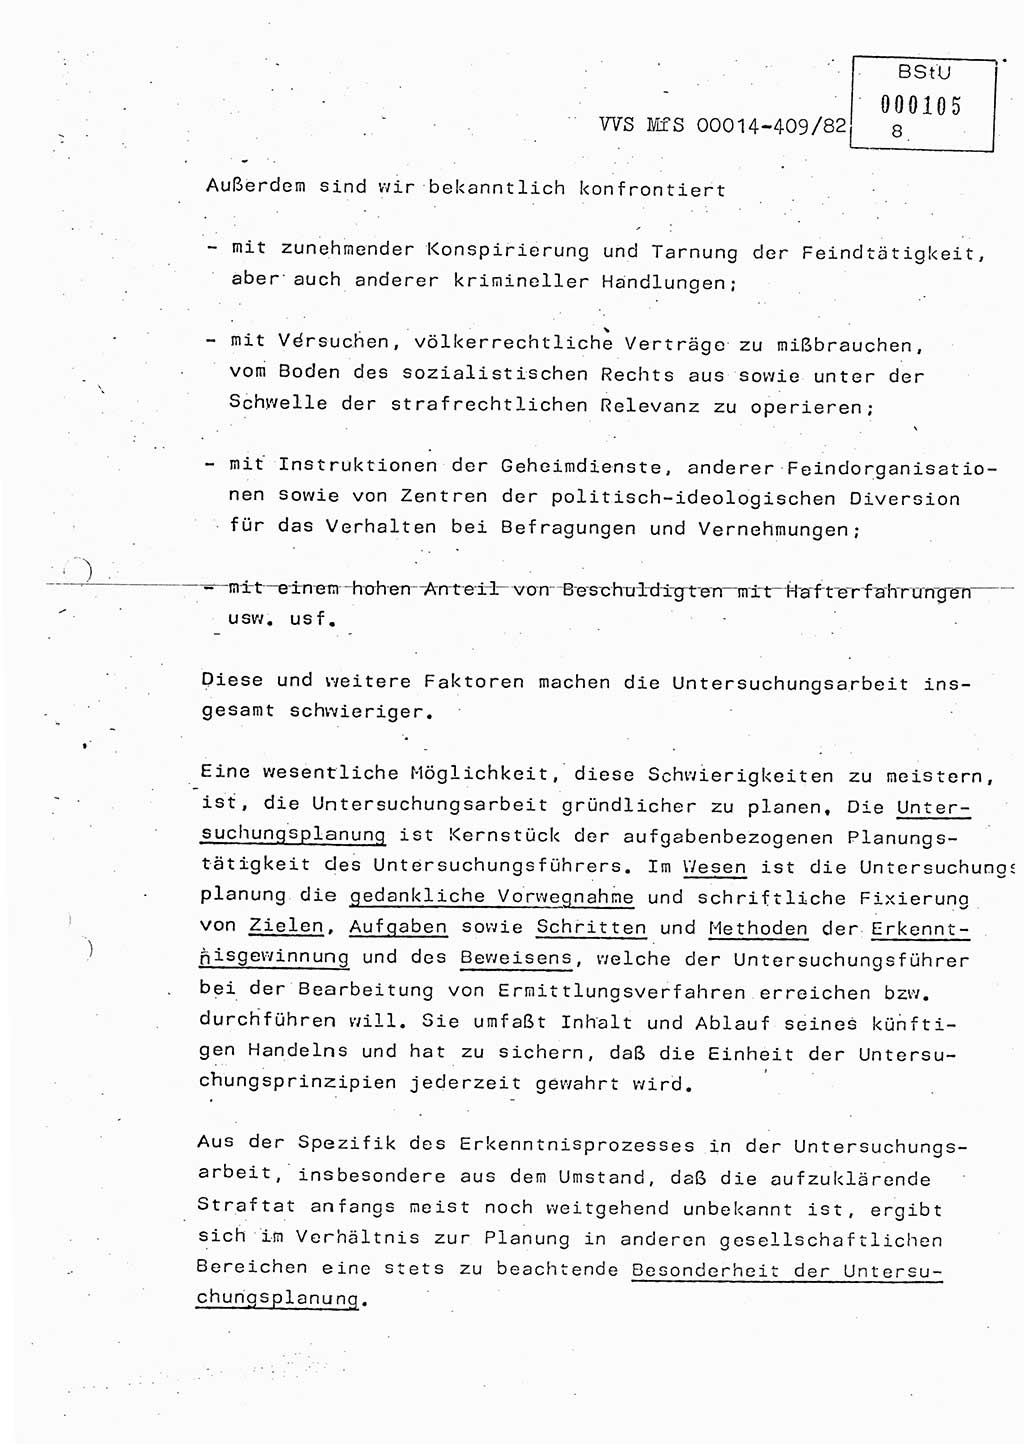 Lektion Ministerium für Staatssicherheit (MfS) [Deutsche Demokratische Republik (DDR)], Hauptabteilung (HA) Ⅸ, Vertrauliche Verschlußsache (VVS) o014-409/82, Berlin 1982, Seite 8 (Lekt. MfS DDR HA Ⅸ VVS o014-409/82 1982, S. 8)